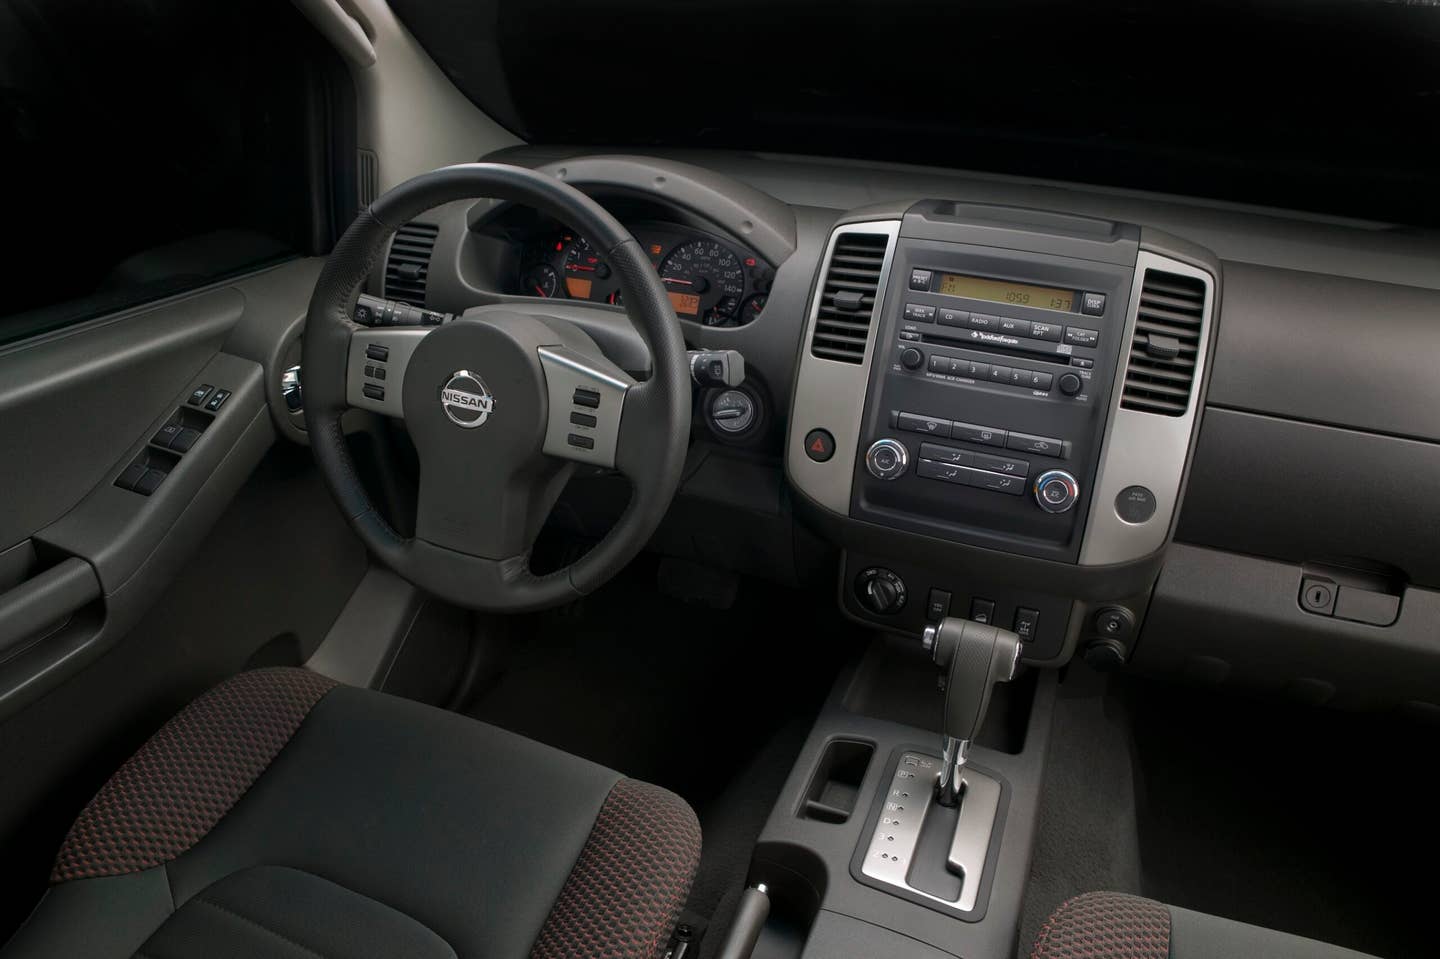 2009 Nissan Xterra